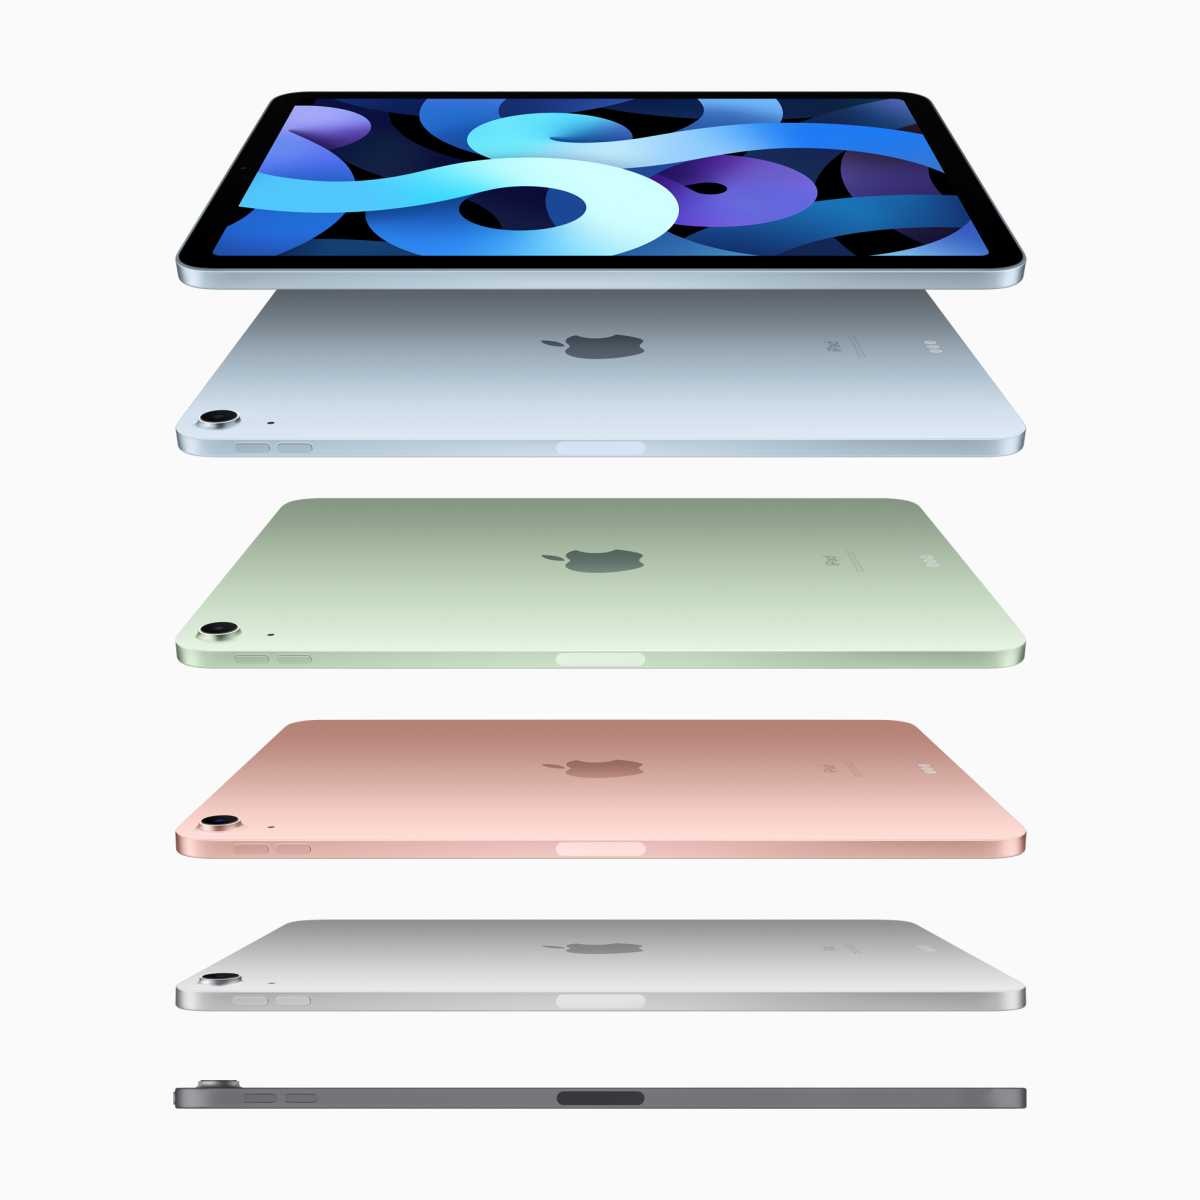 iPad (Pro) kaufen: Die besten Sparangebote im März 2023